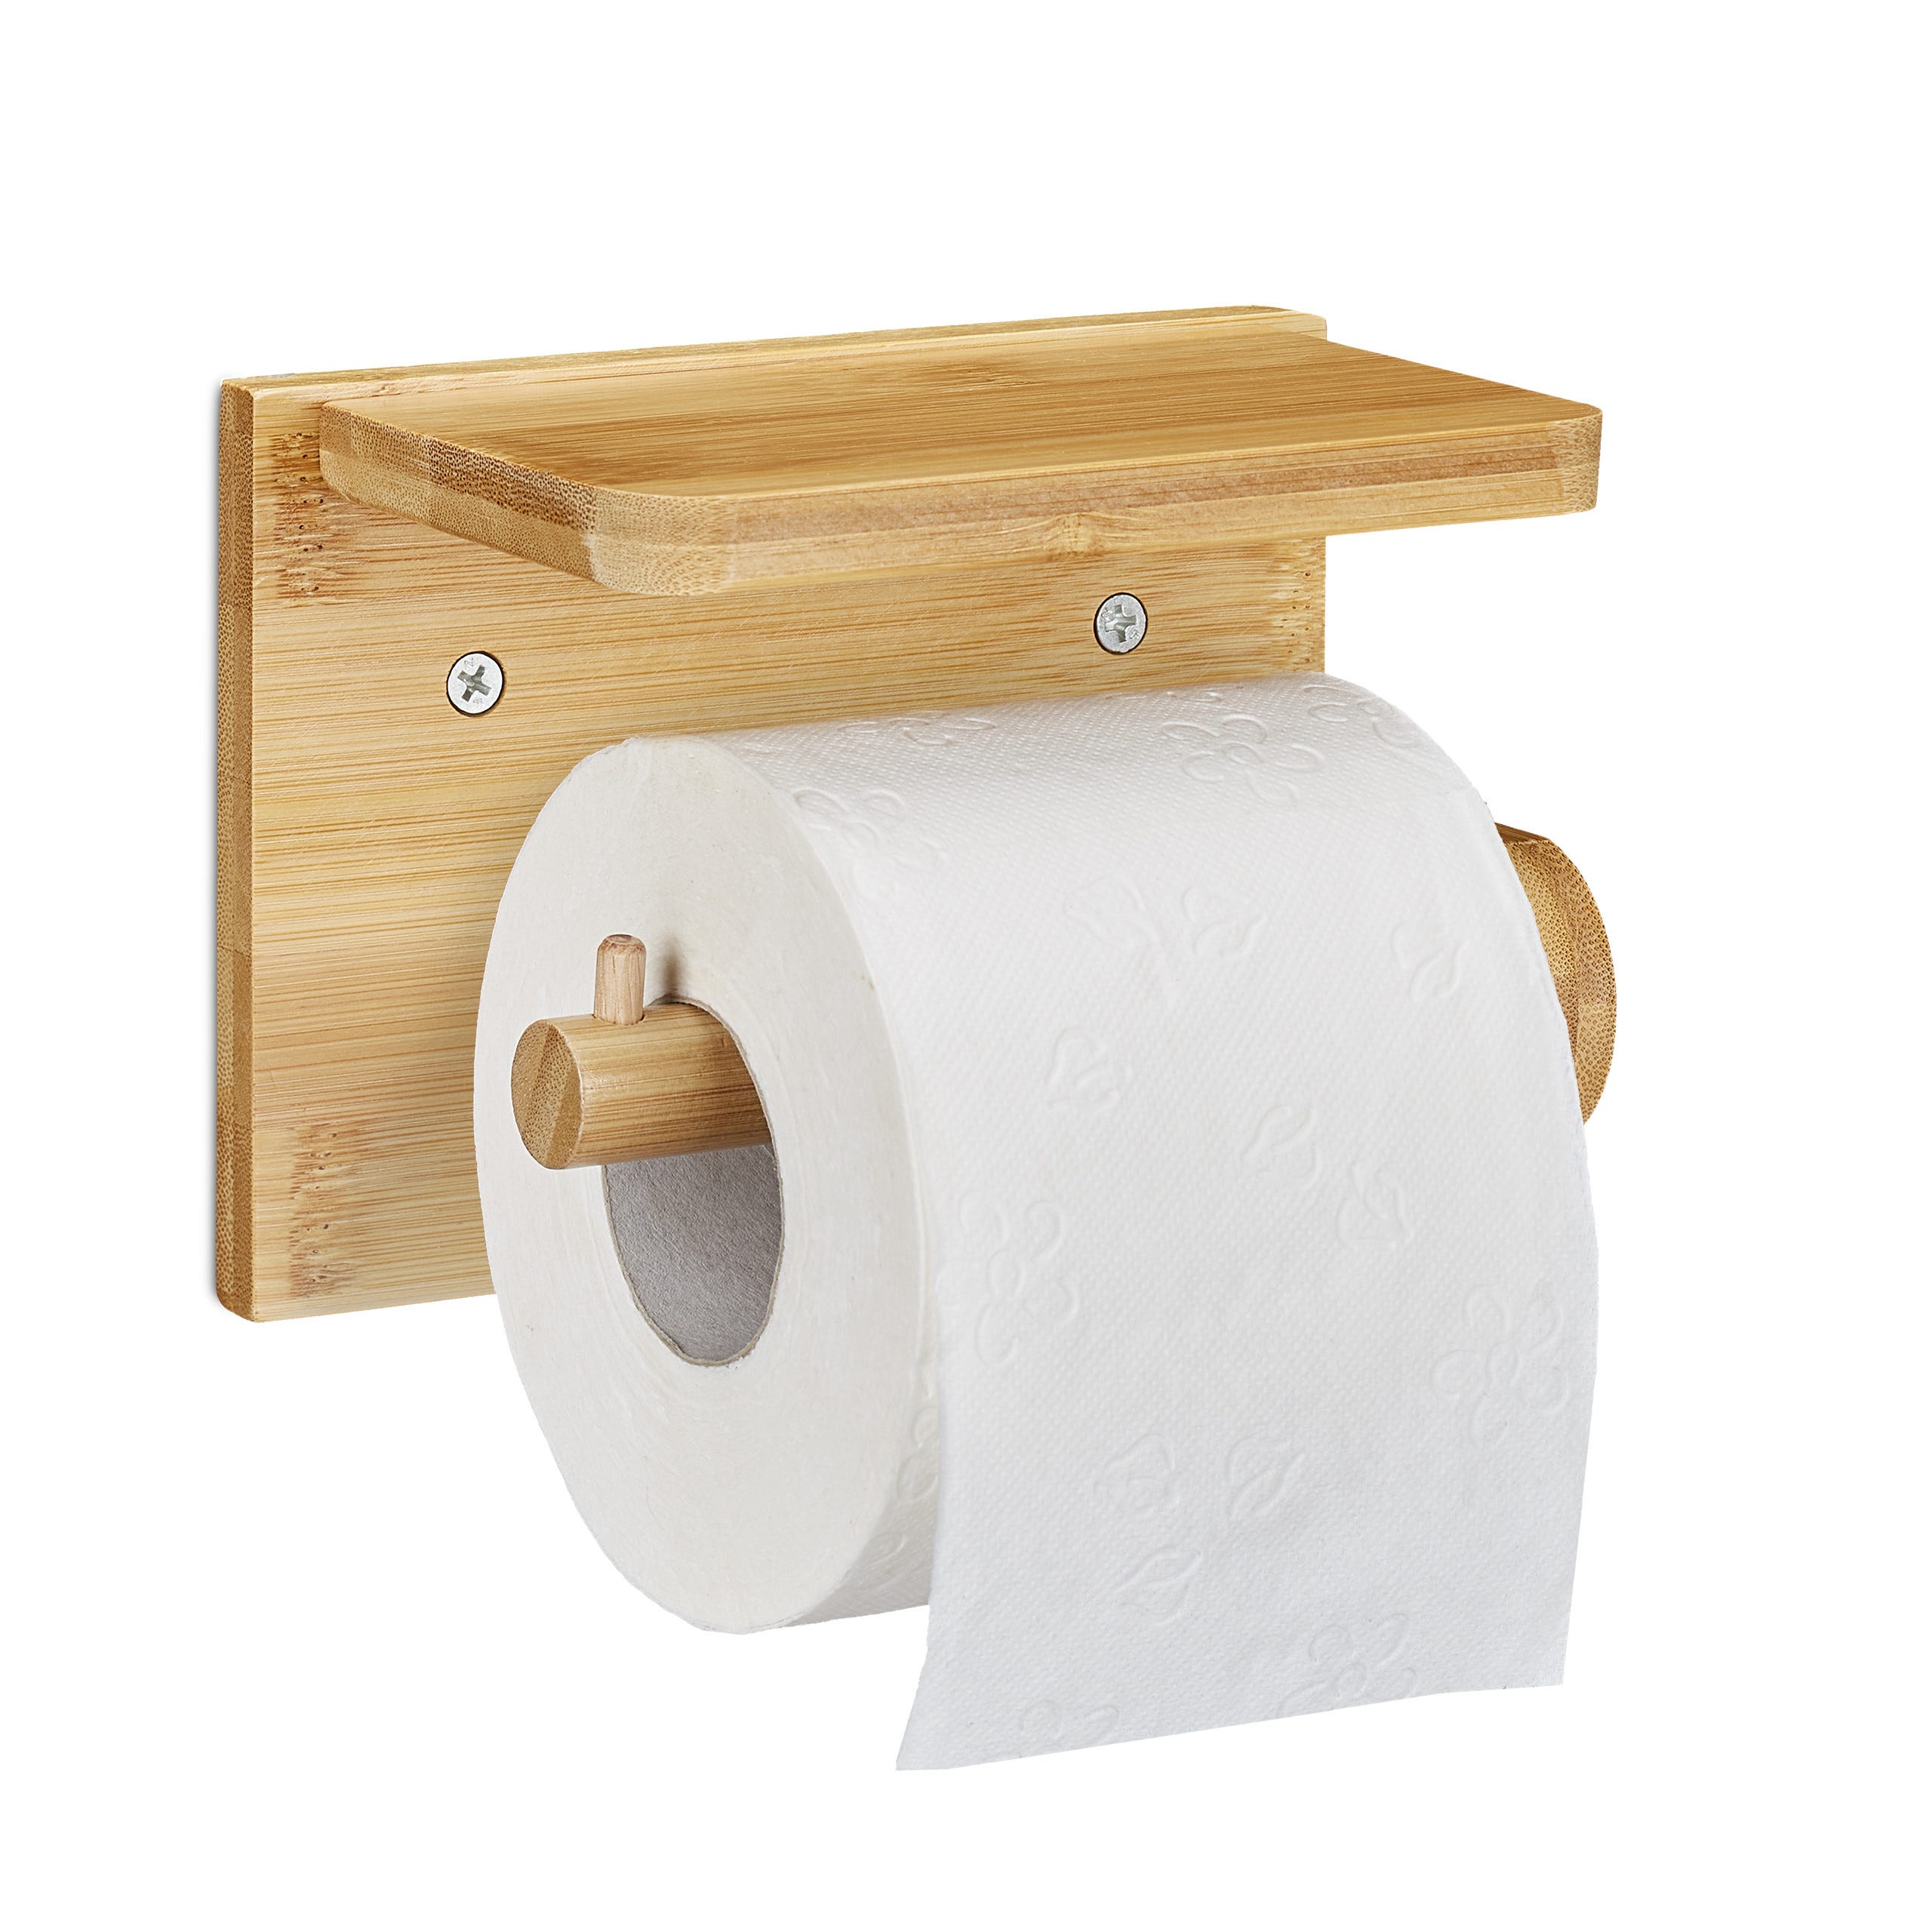 Tour de rangement papier toilette